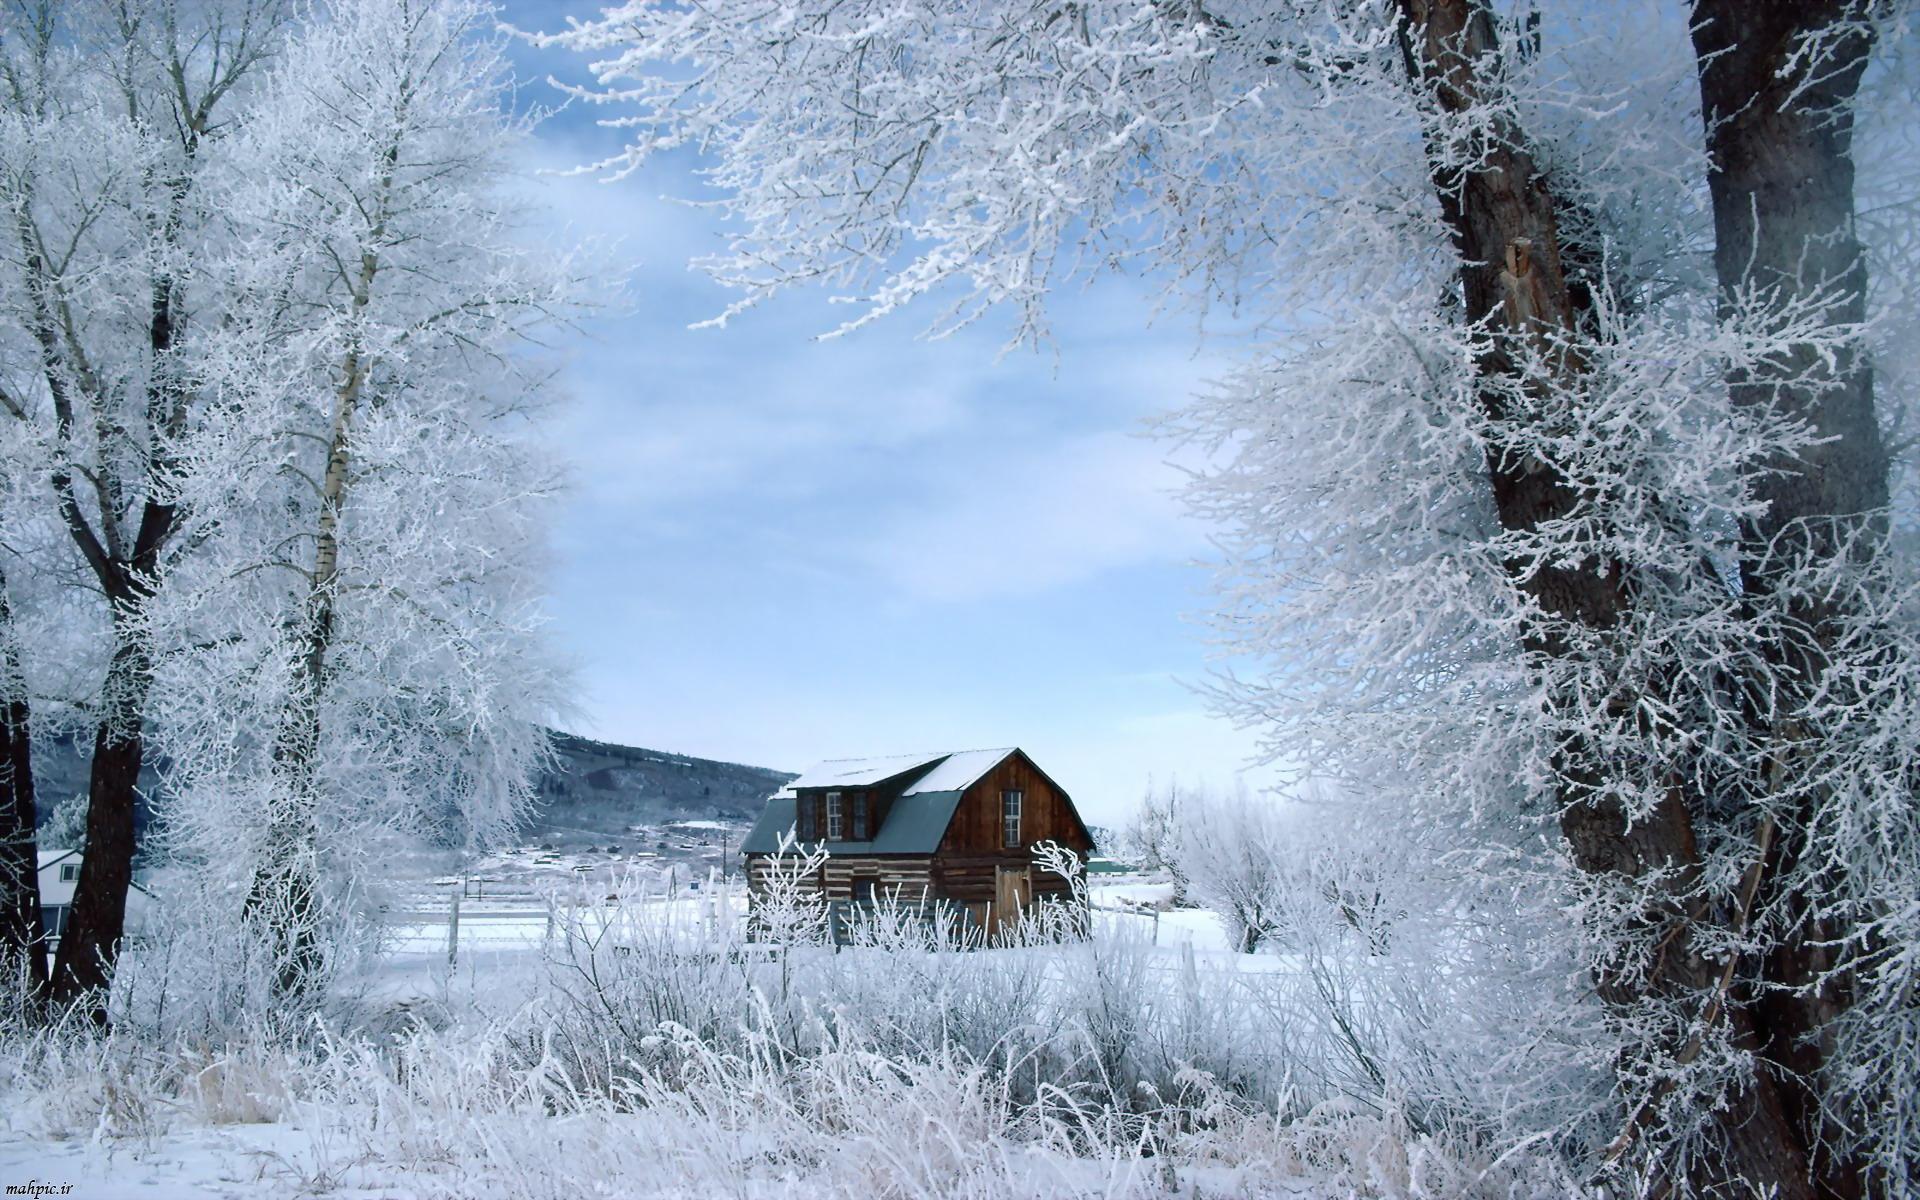 Скачать картинку Зима, Снег, Дерево, Дом, Поле, Ландшафт, Фотографии в телефон бесплатно.